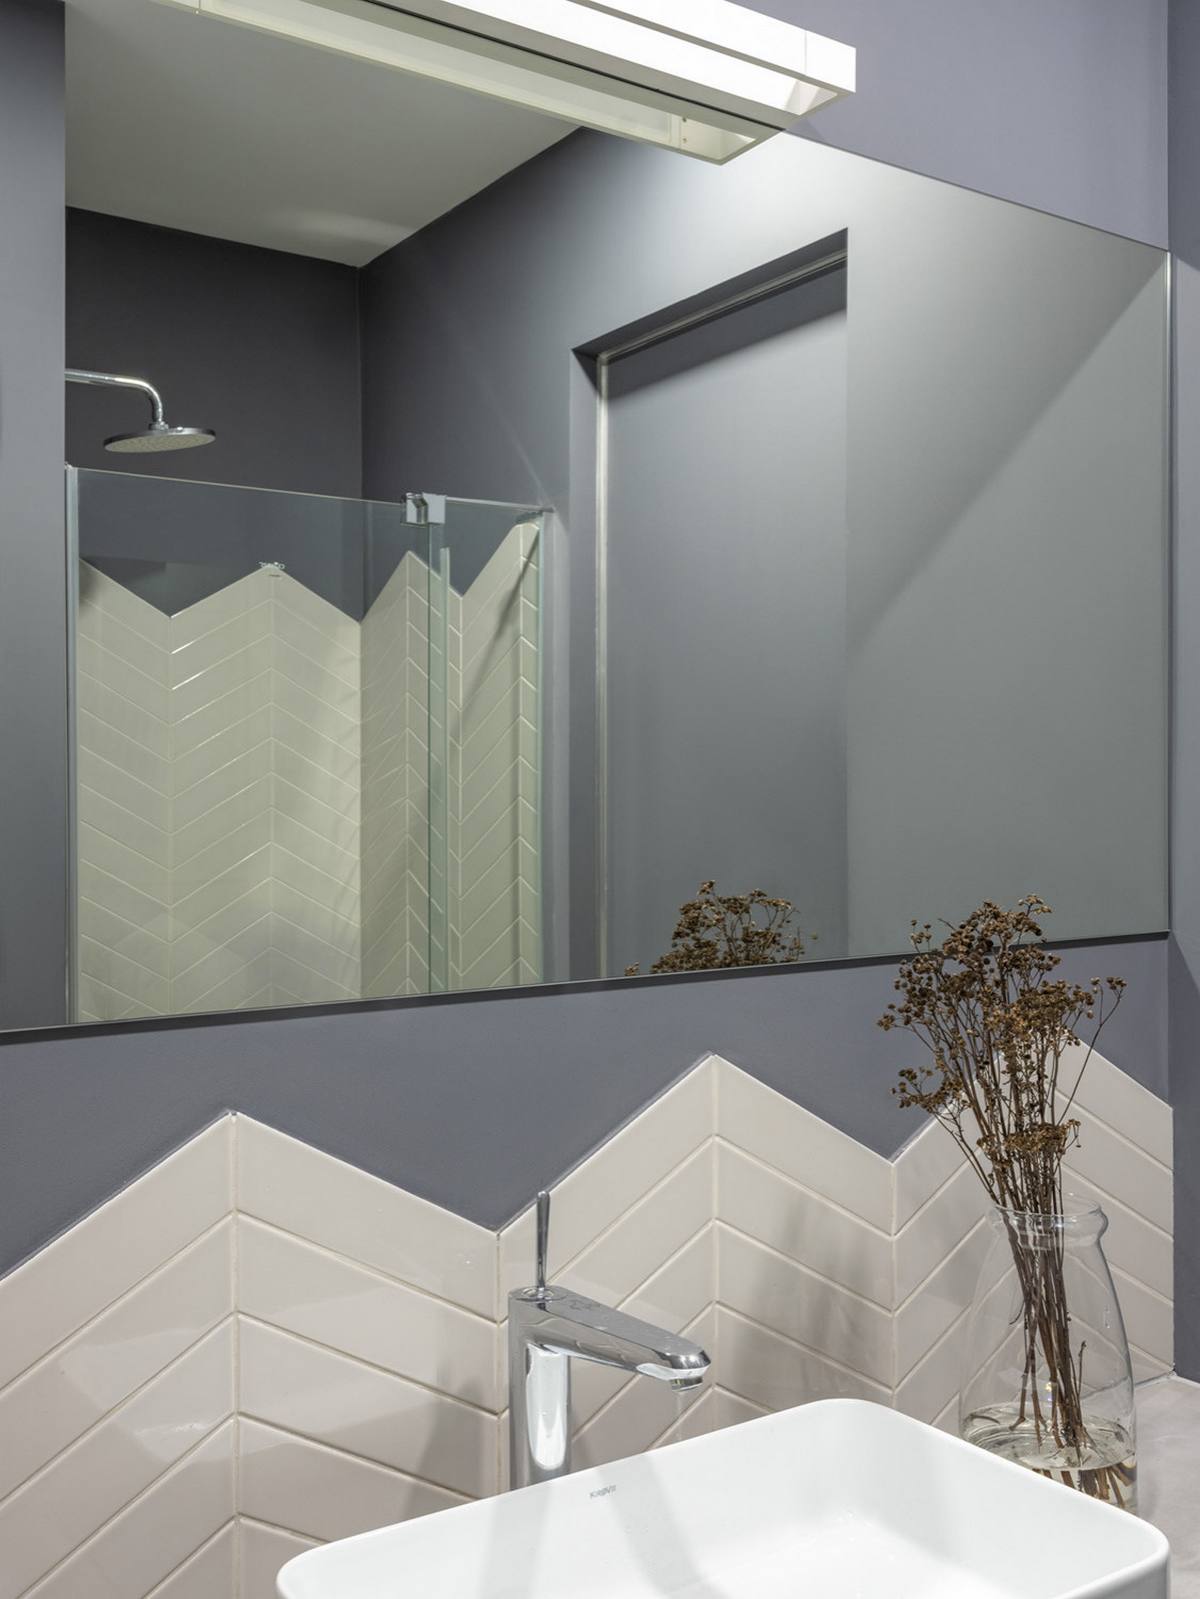 Thông qua hình ảnh phản chiếu từ tấm gương, chúng ta có thể thấy buồng tắm và nhà vệ sinh được phân vùng bởi cửa kính trong suốt. Bức tường cũng được ốp gạch họa tiết xương cá sáng bóng tạo sự liên kết hài hòa với khu vực bồn rửa tay.